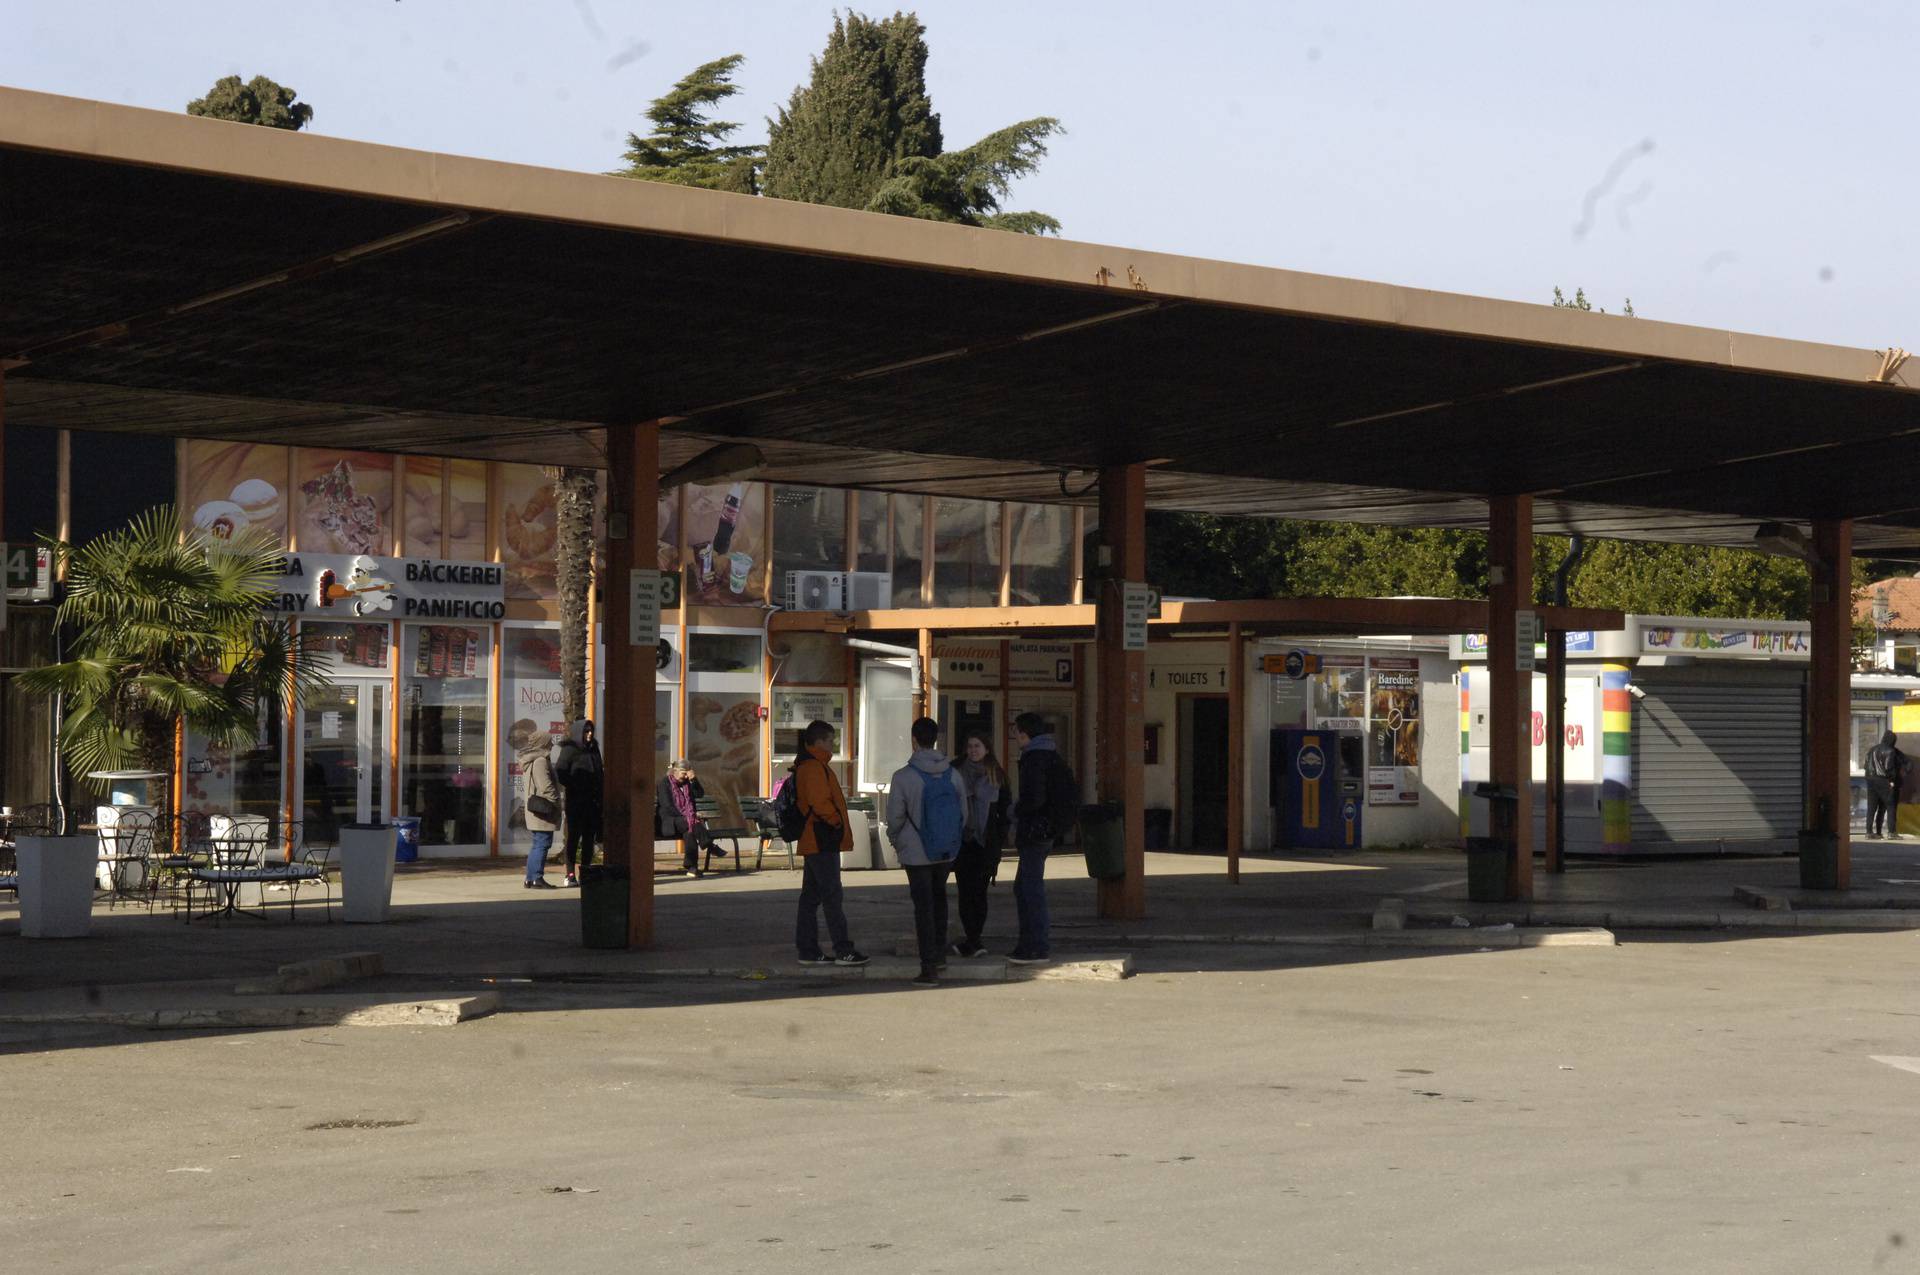 Hoće li riječki Autotrans ikada srediti svoju autobusnu stanicu u Poreču koja se raspada?